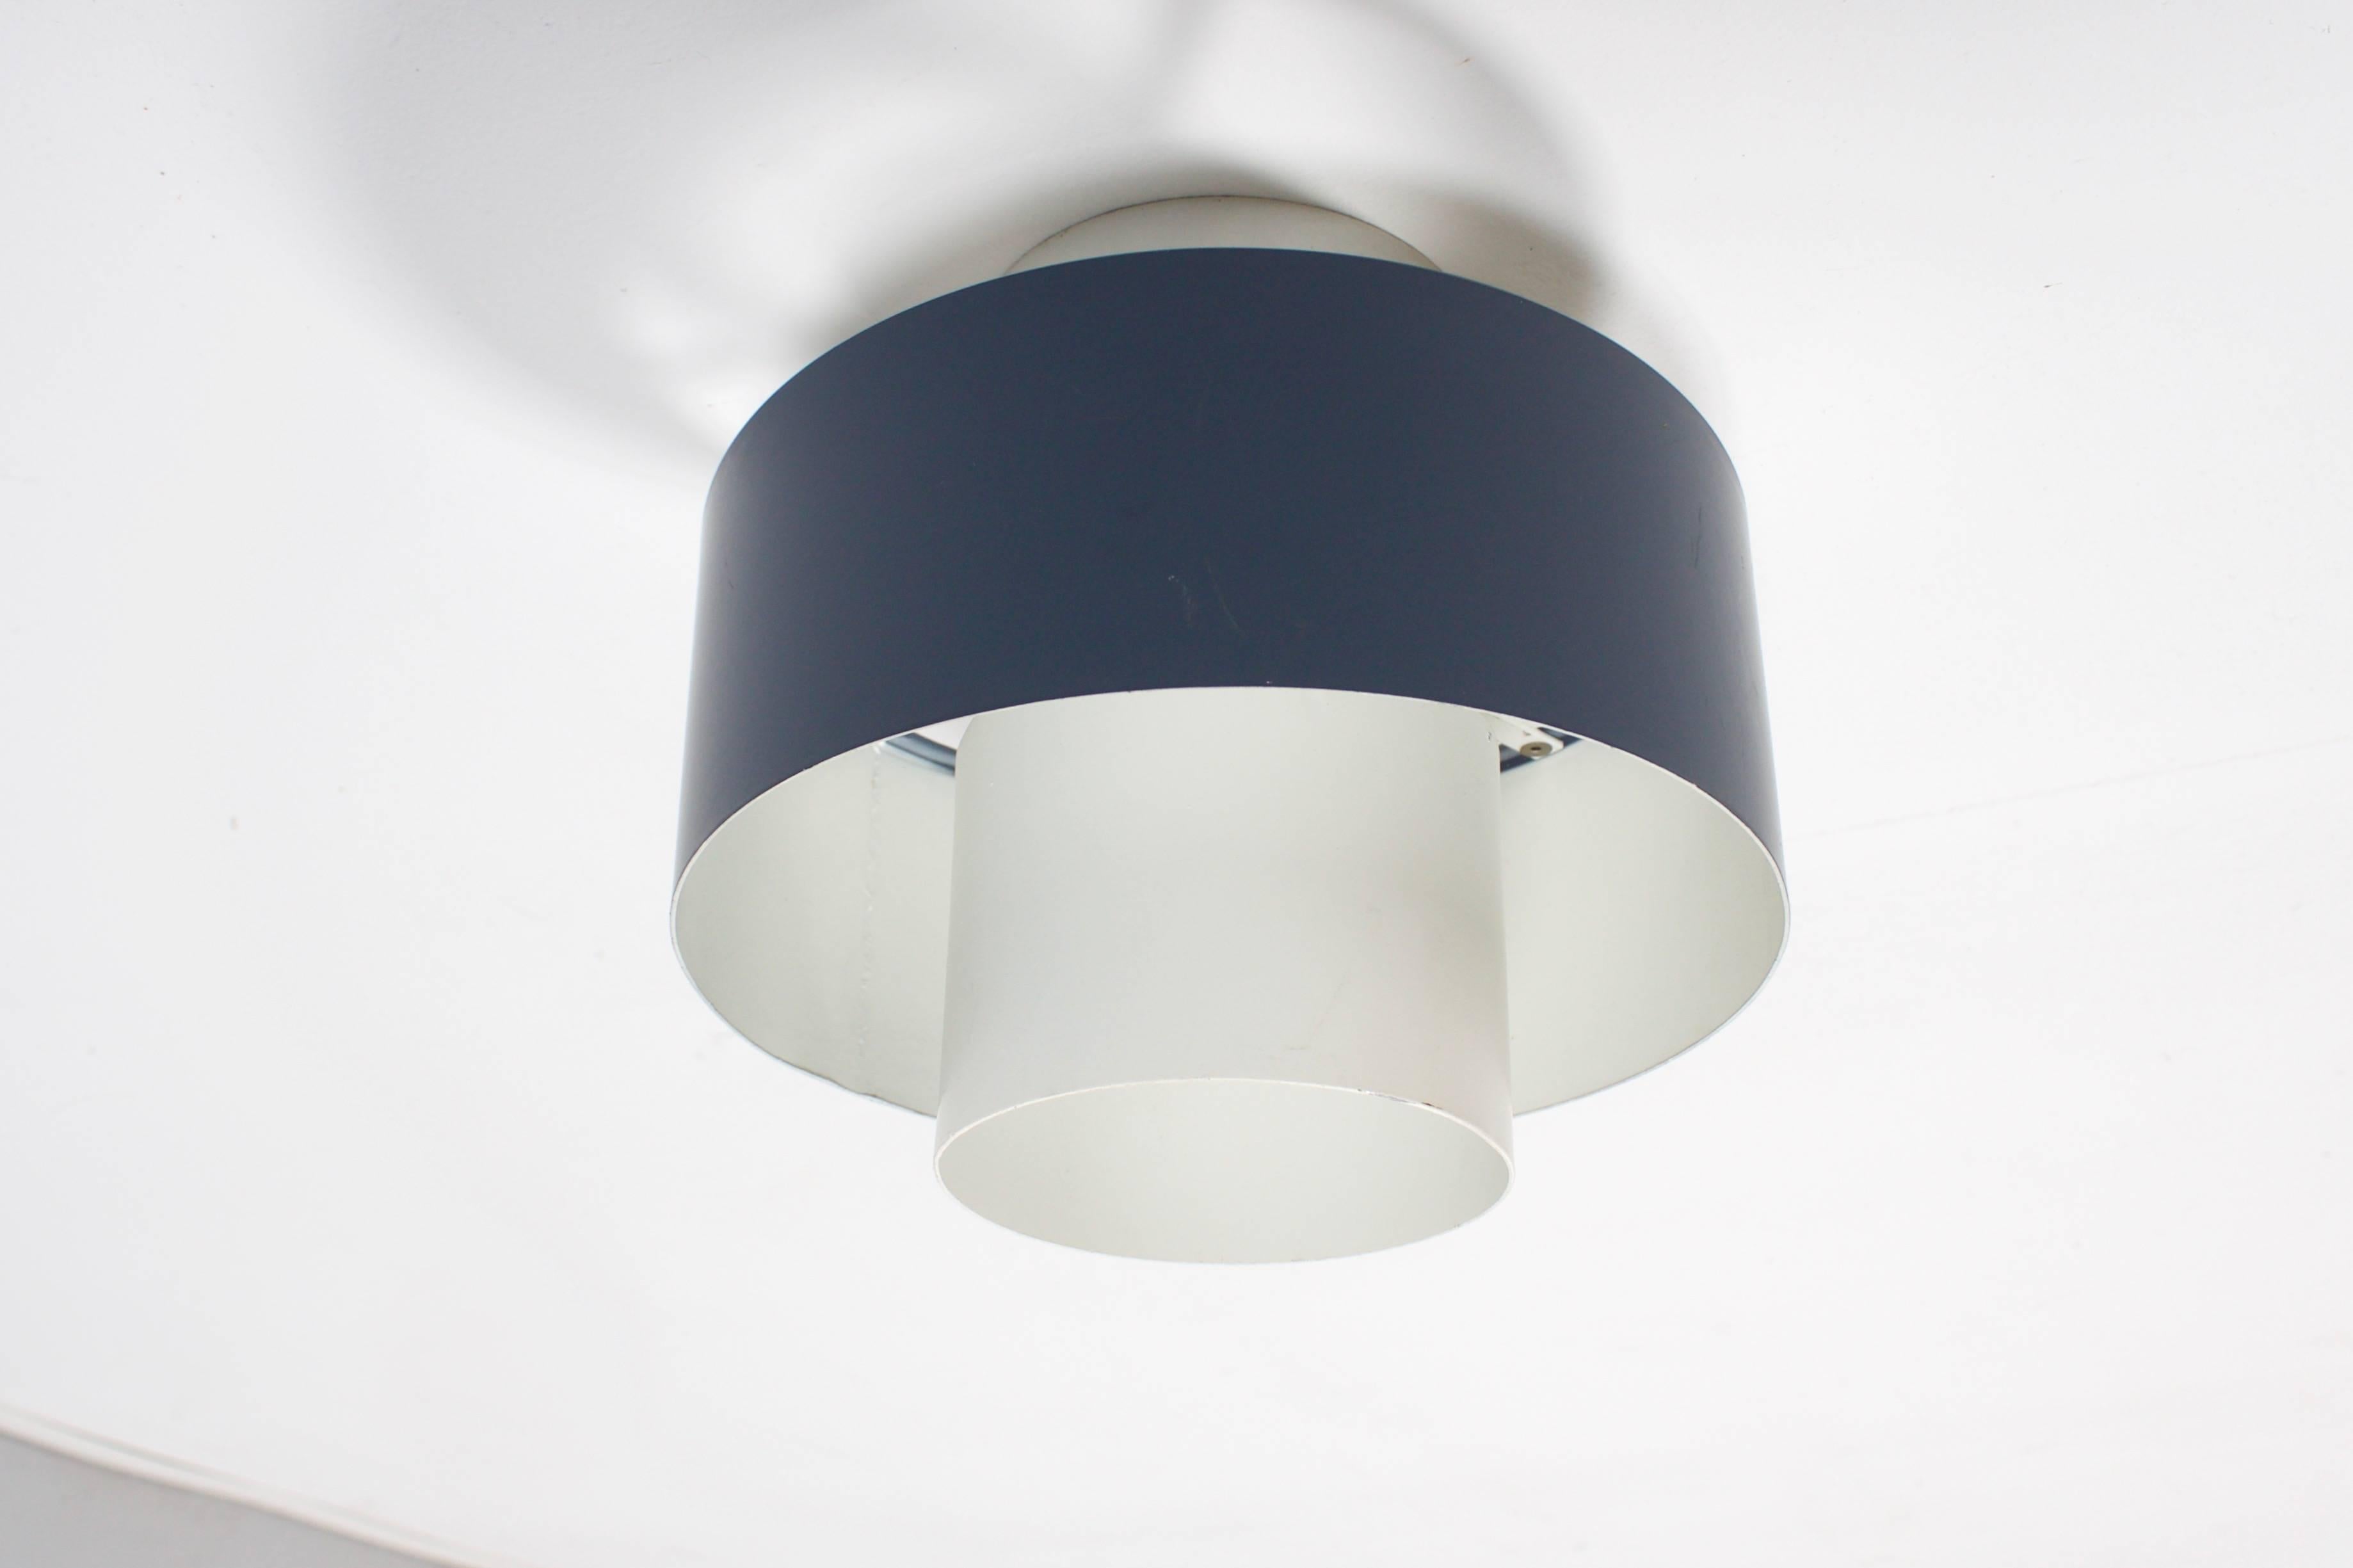 Très belles appliques industrielles / montures encastrées par Philips Eindhoven 

Design : Louis Kalff

La lampe se compose de 3 anneaux métalliques, deux laqués blancs et un plus grand laqué gris.

3 lampes disponibles.

Peut être vendu à